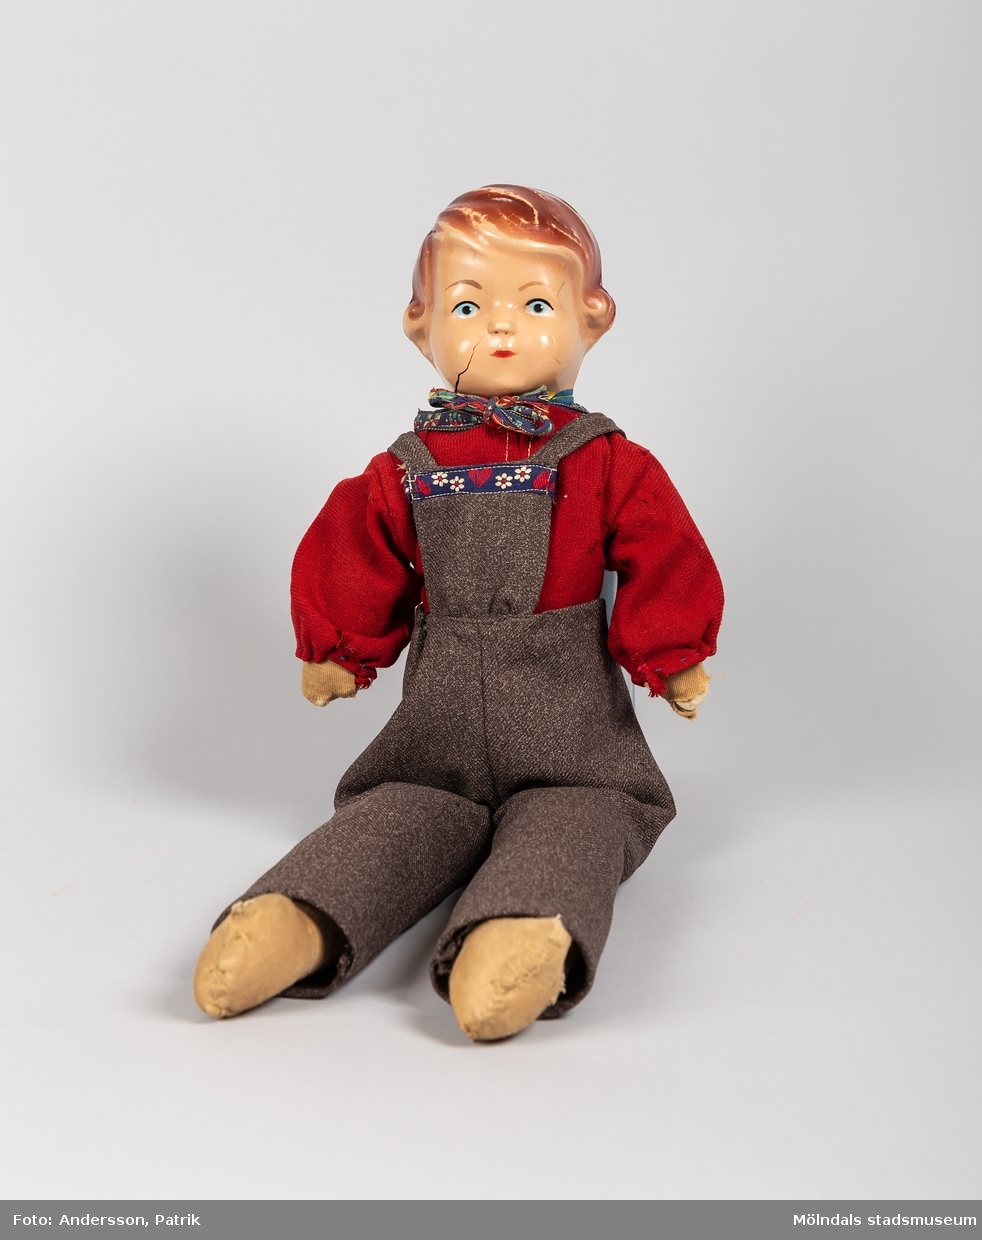 En docka som kallades Pelle. Dockan är från början av 1950-talet.
Rolf som bodde på en lantgård utanför Trelleborg fick dockan när han var cirka 3-5 år. Dockans kläder är handsydda av hans moster Elsa som var född 1921.